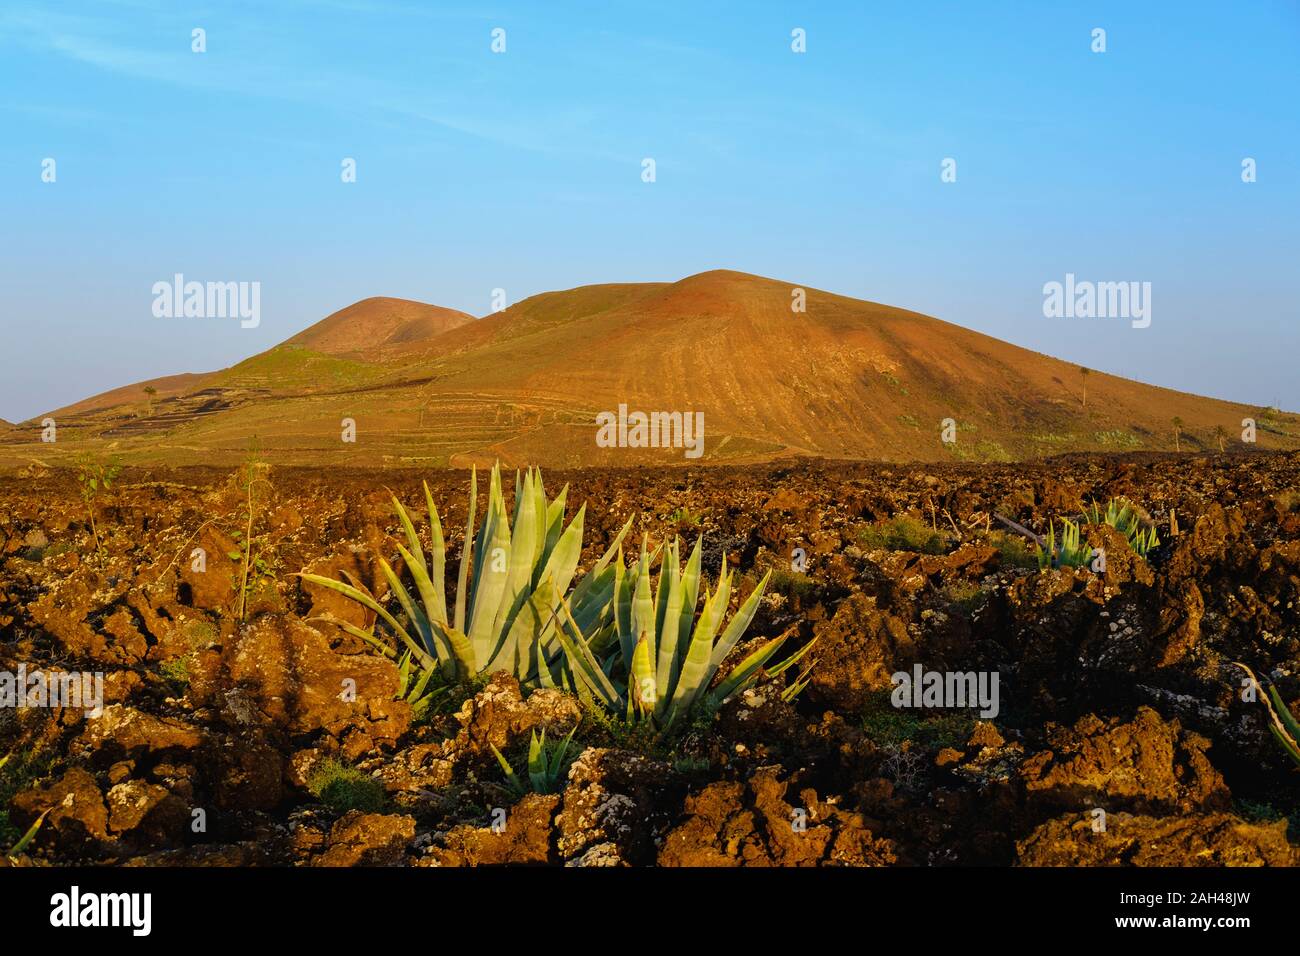 Spain, Canary Islands, Lanzarote, Caldera Los Rostros and Montana del Cortijo, Agave growing in landscape Stock Photo